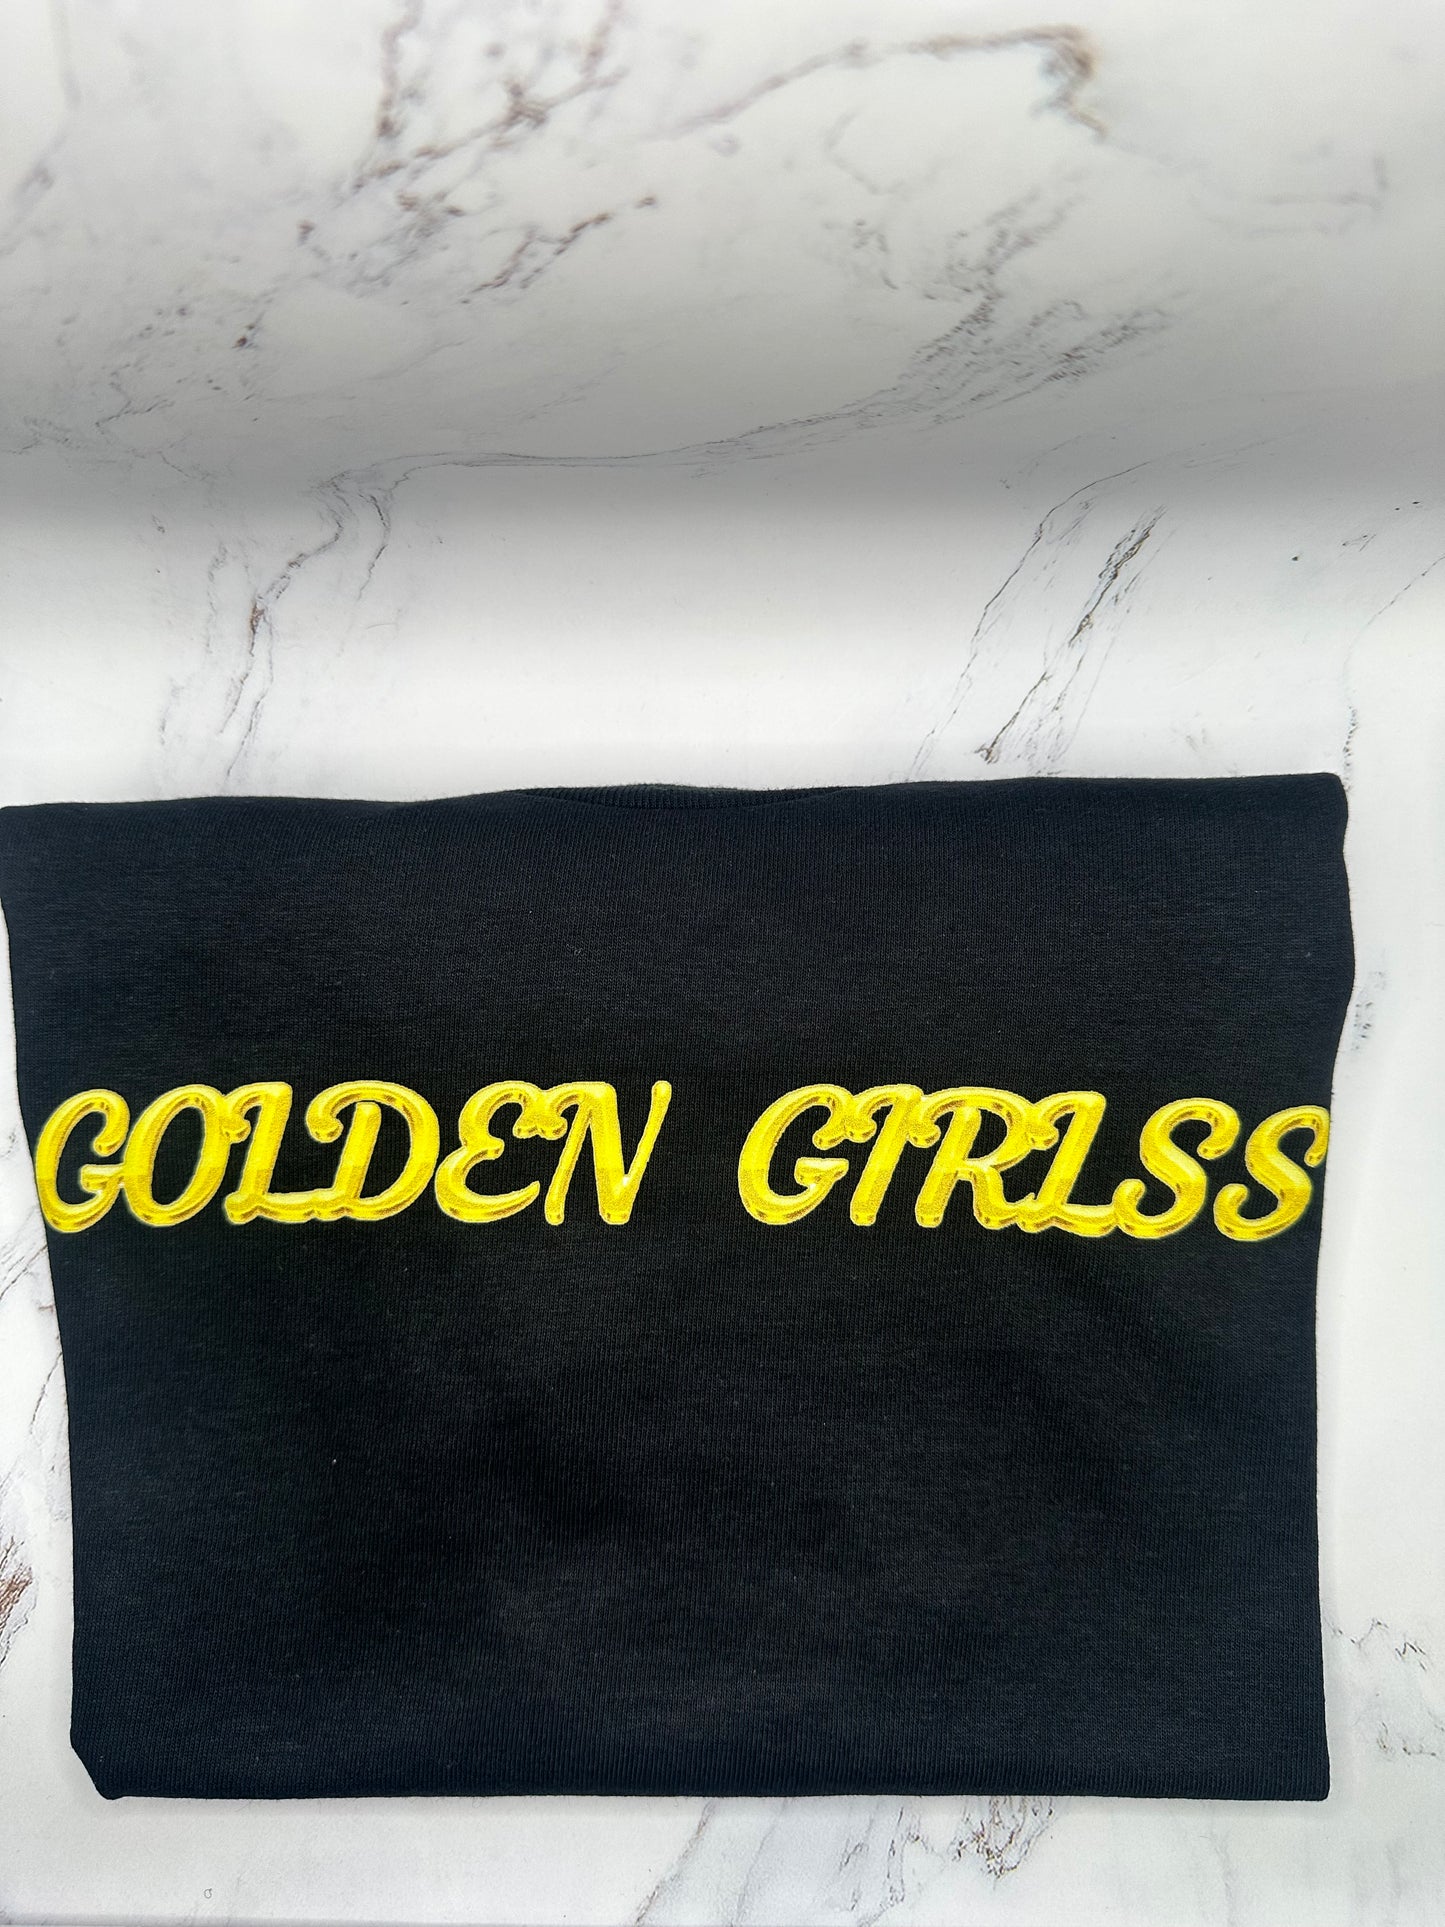 GOLDEN GIRLSS T- SHIRT